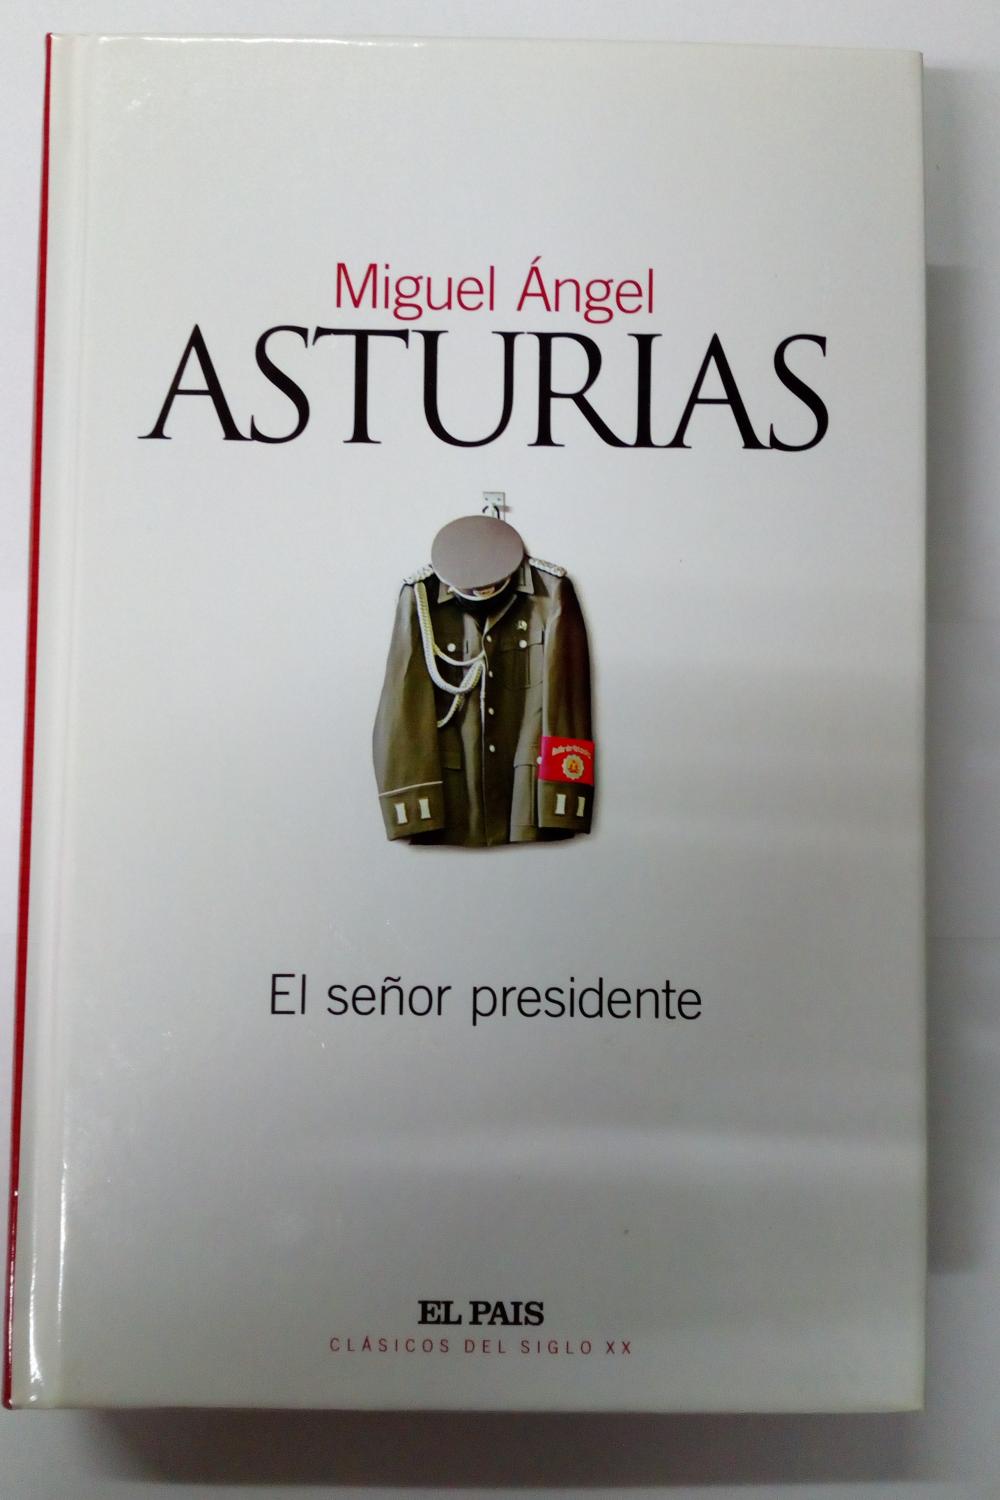 El señor presidente - Asturias, Miguel Ángel